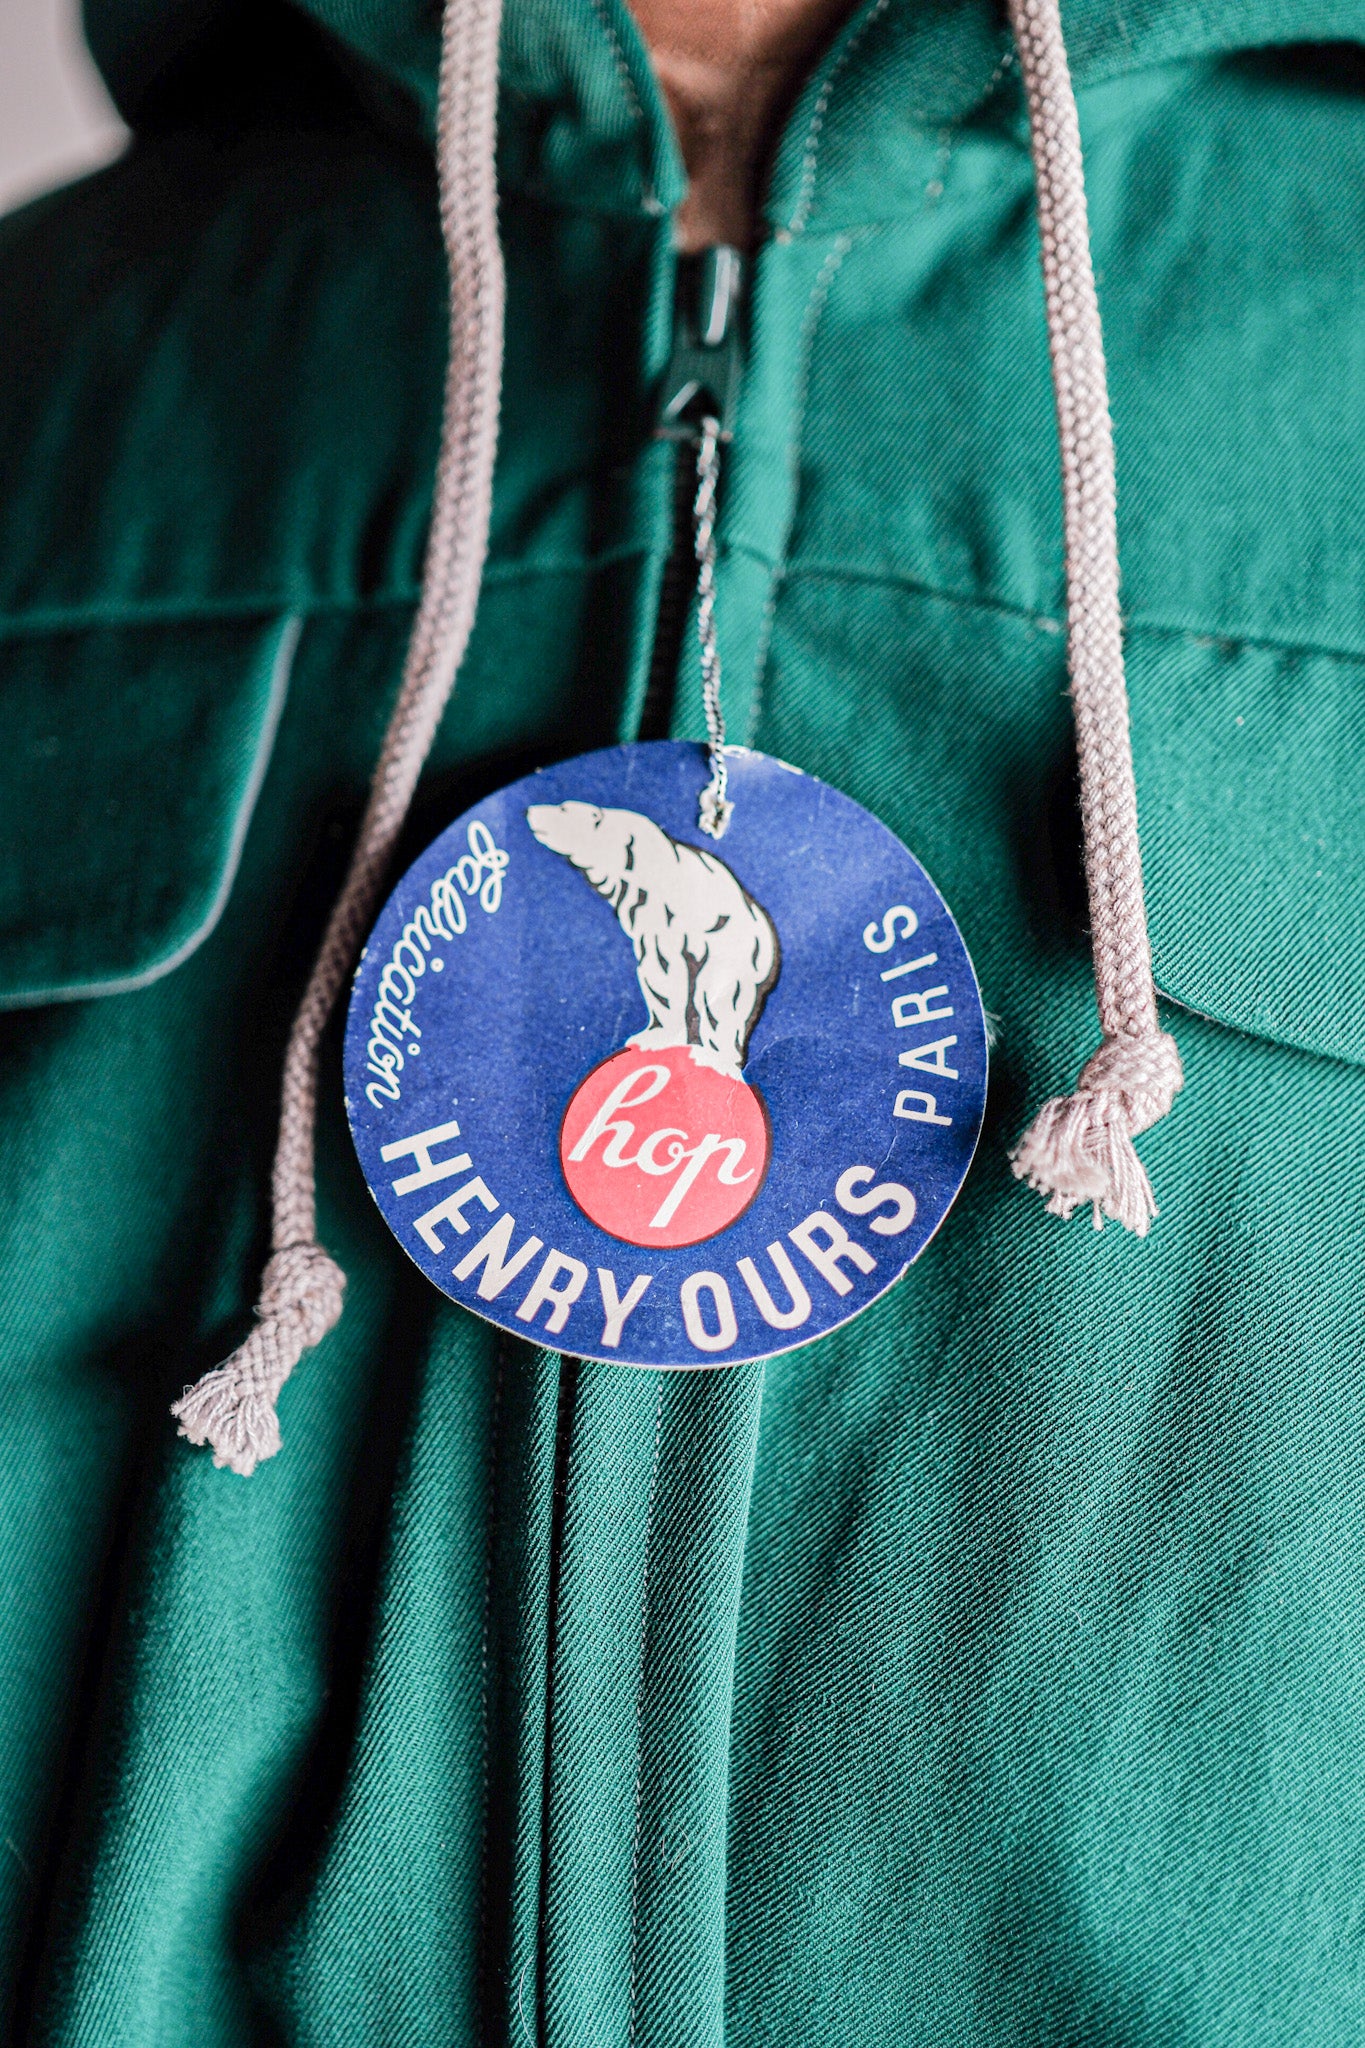 [〜50年代]法國復古綠色羊毛人造絲連帽夾克“死股”